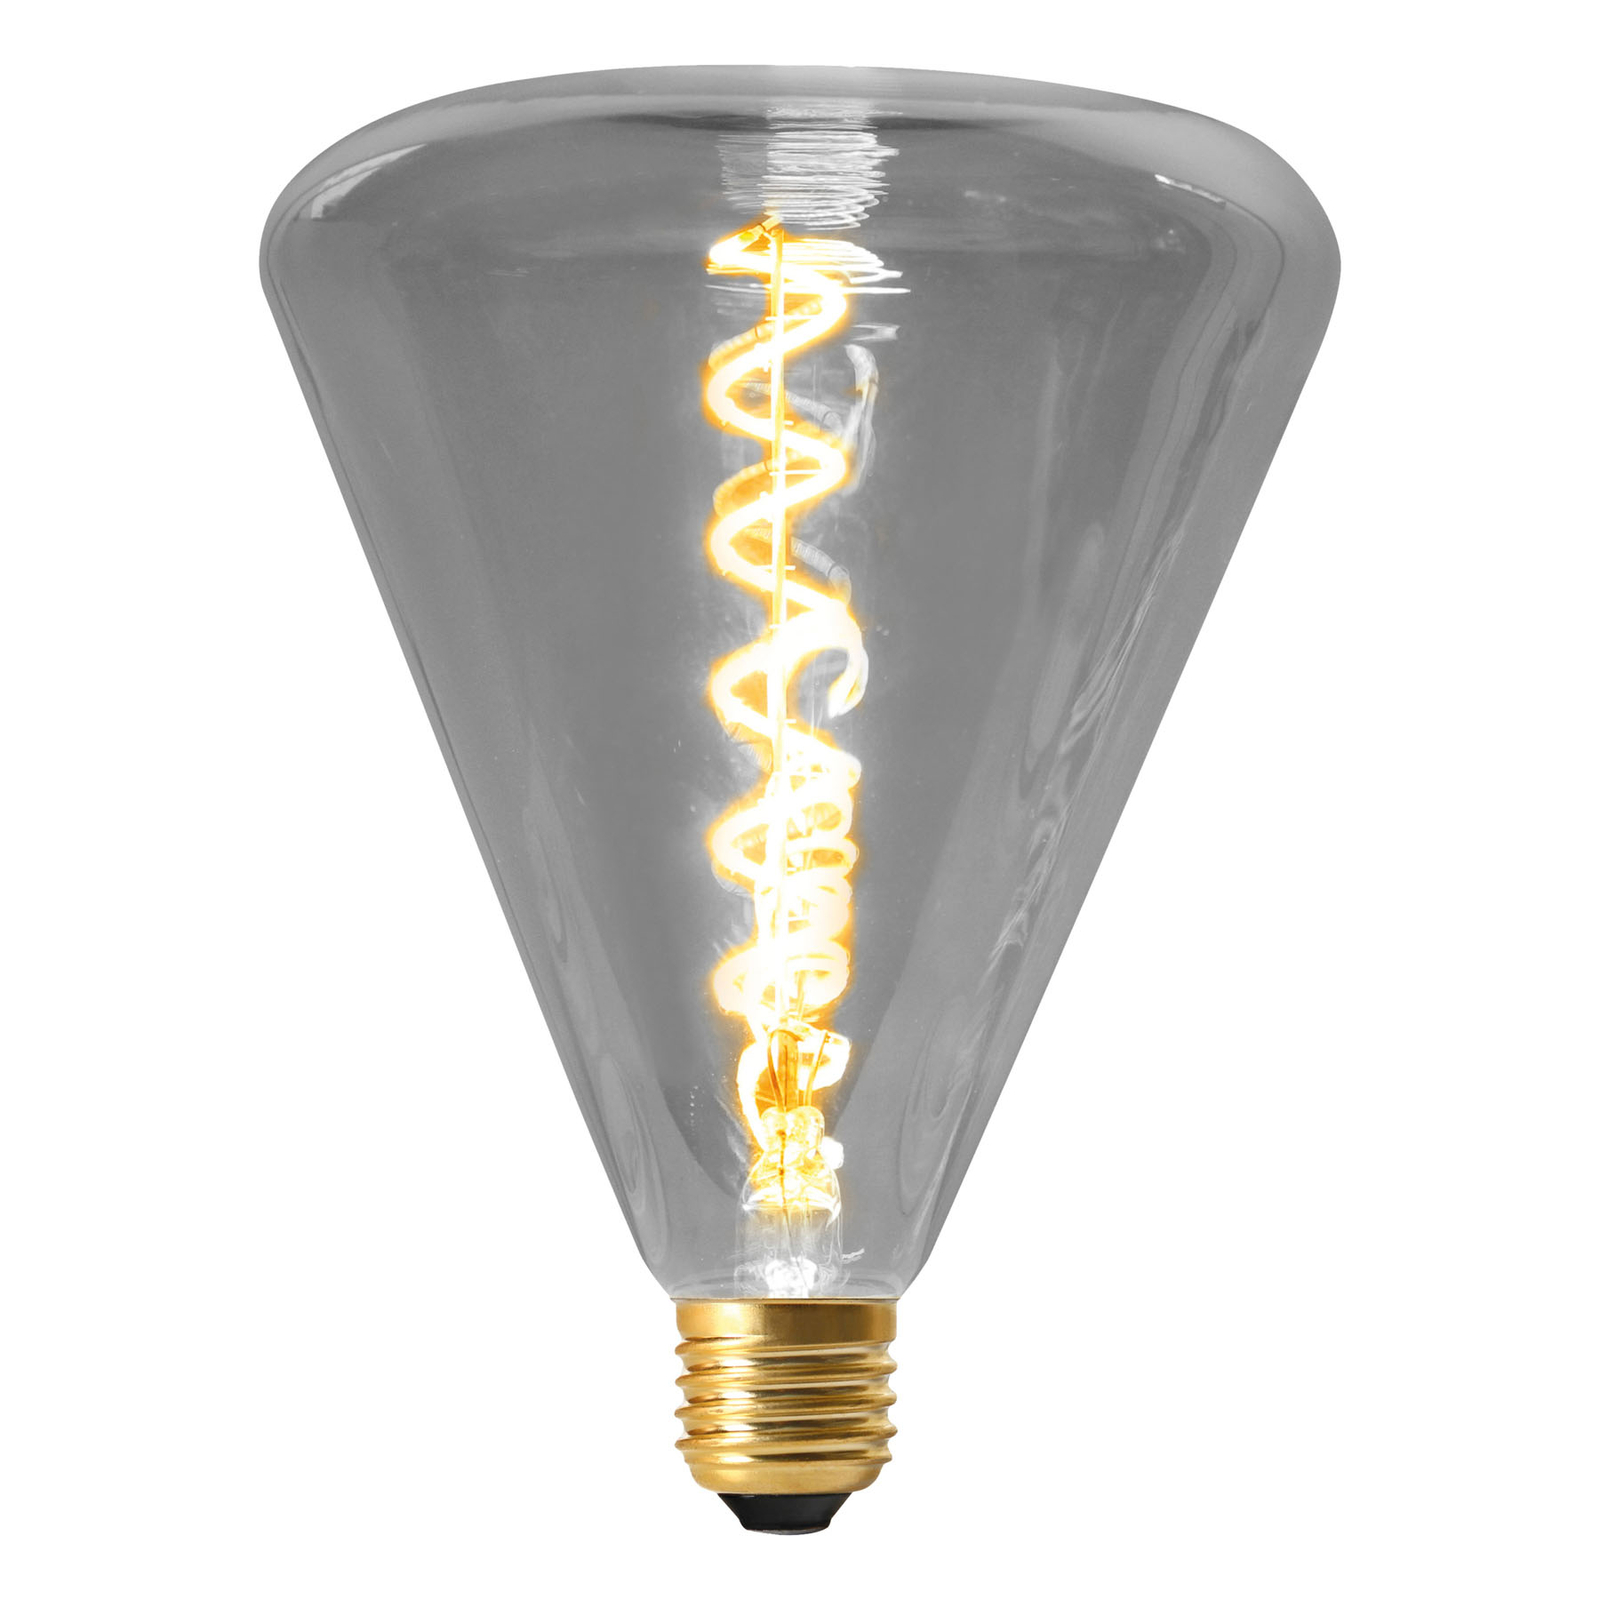 LED lamp Dilly E27 4W 2200K dimbaar, grijs getint